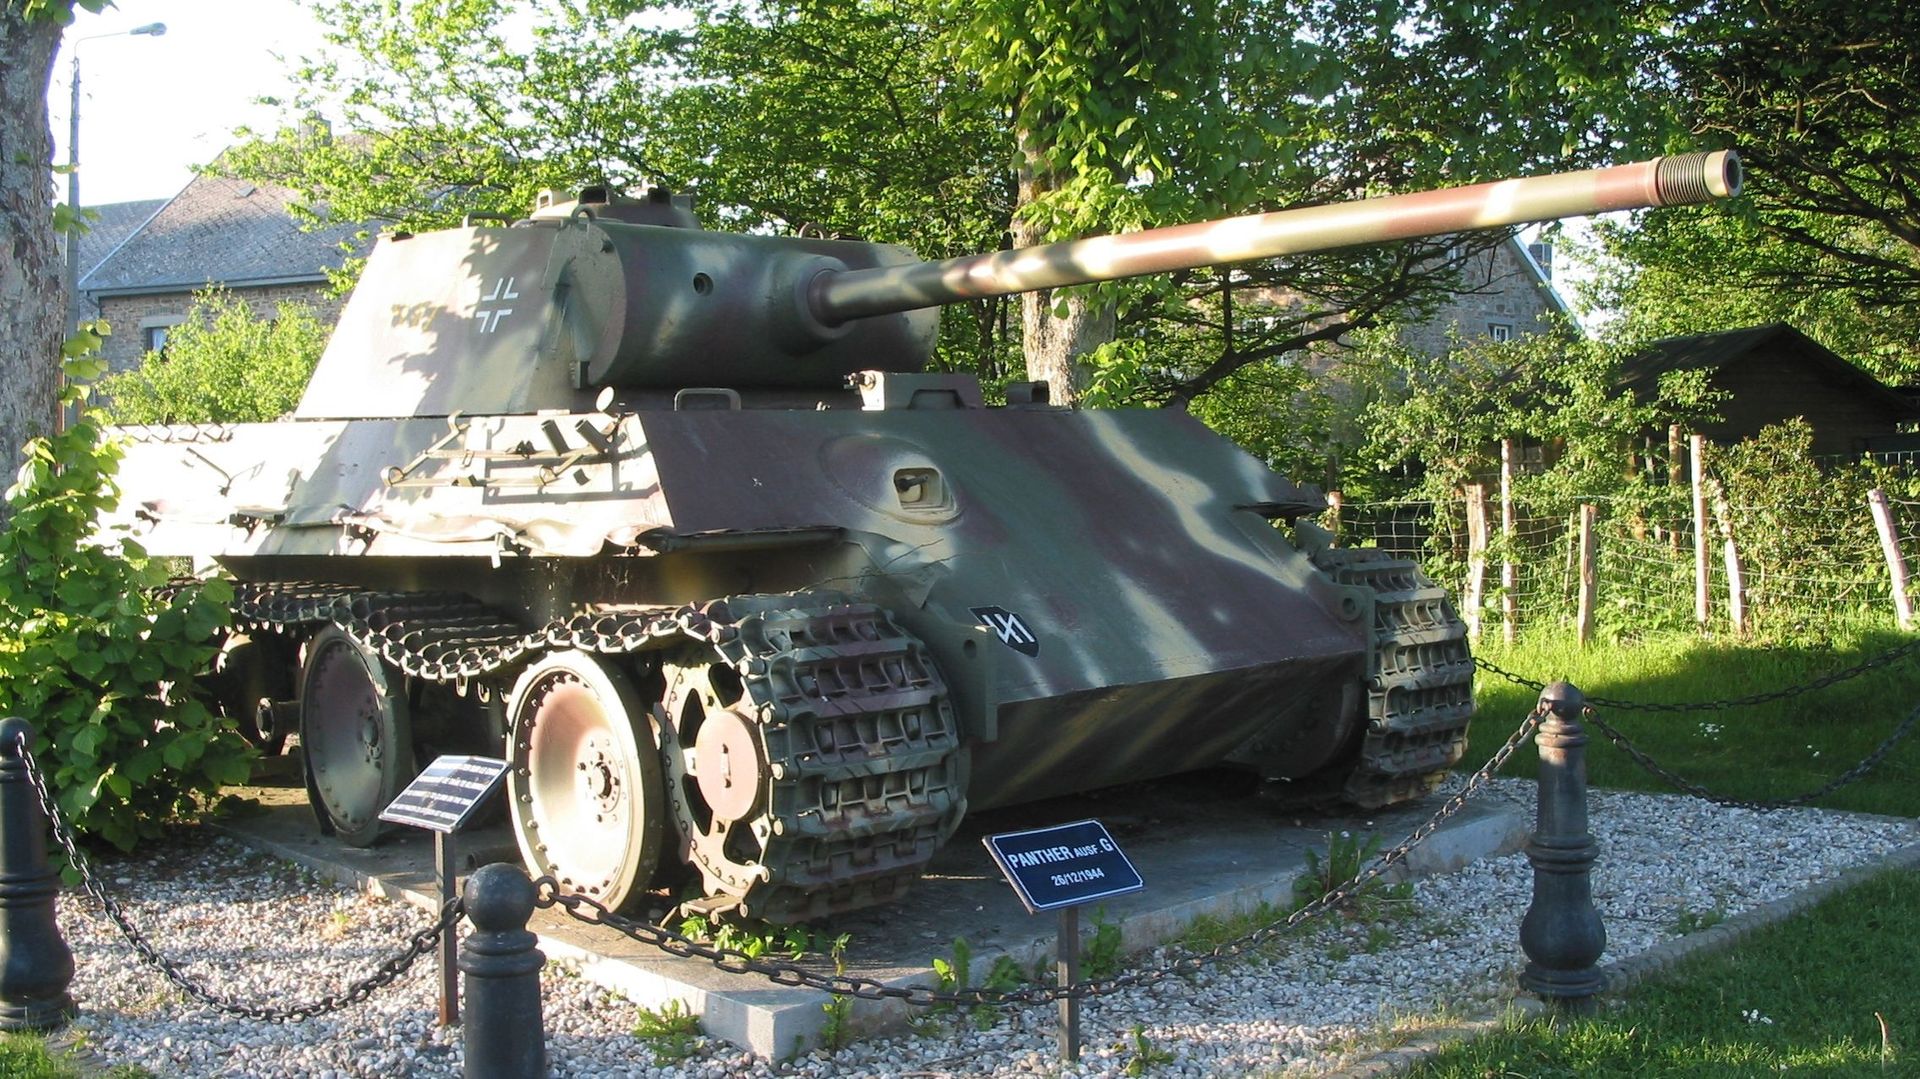 Un char allemand "Panther" a Grandmenil, détruit durant la Bataille des Ardennes